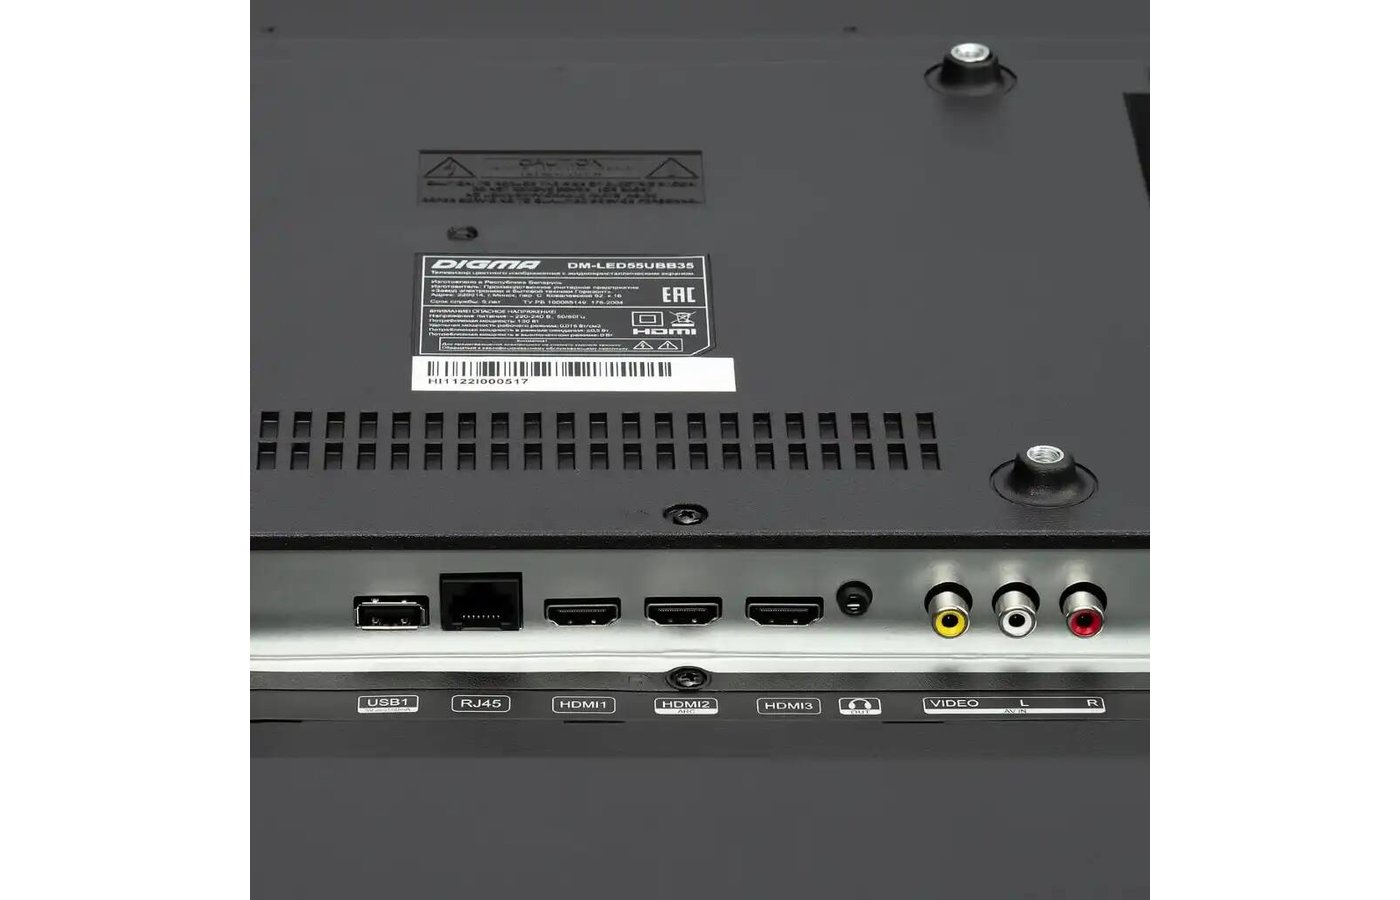 55" Телевизор Digma DM-led55ubb35 led, черный. Телевизор Digma DM-led43ubb35. 40" Телевизор Digma DM-led40mq11. DM-led40f205bt2.